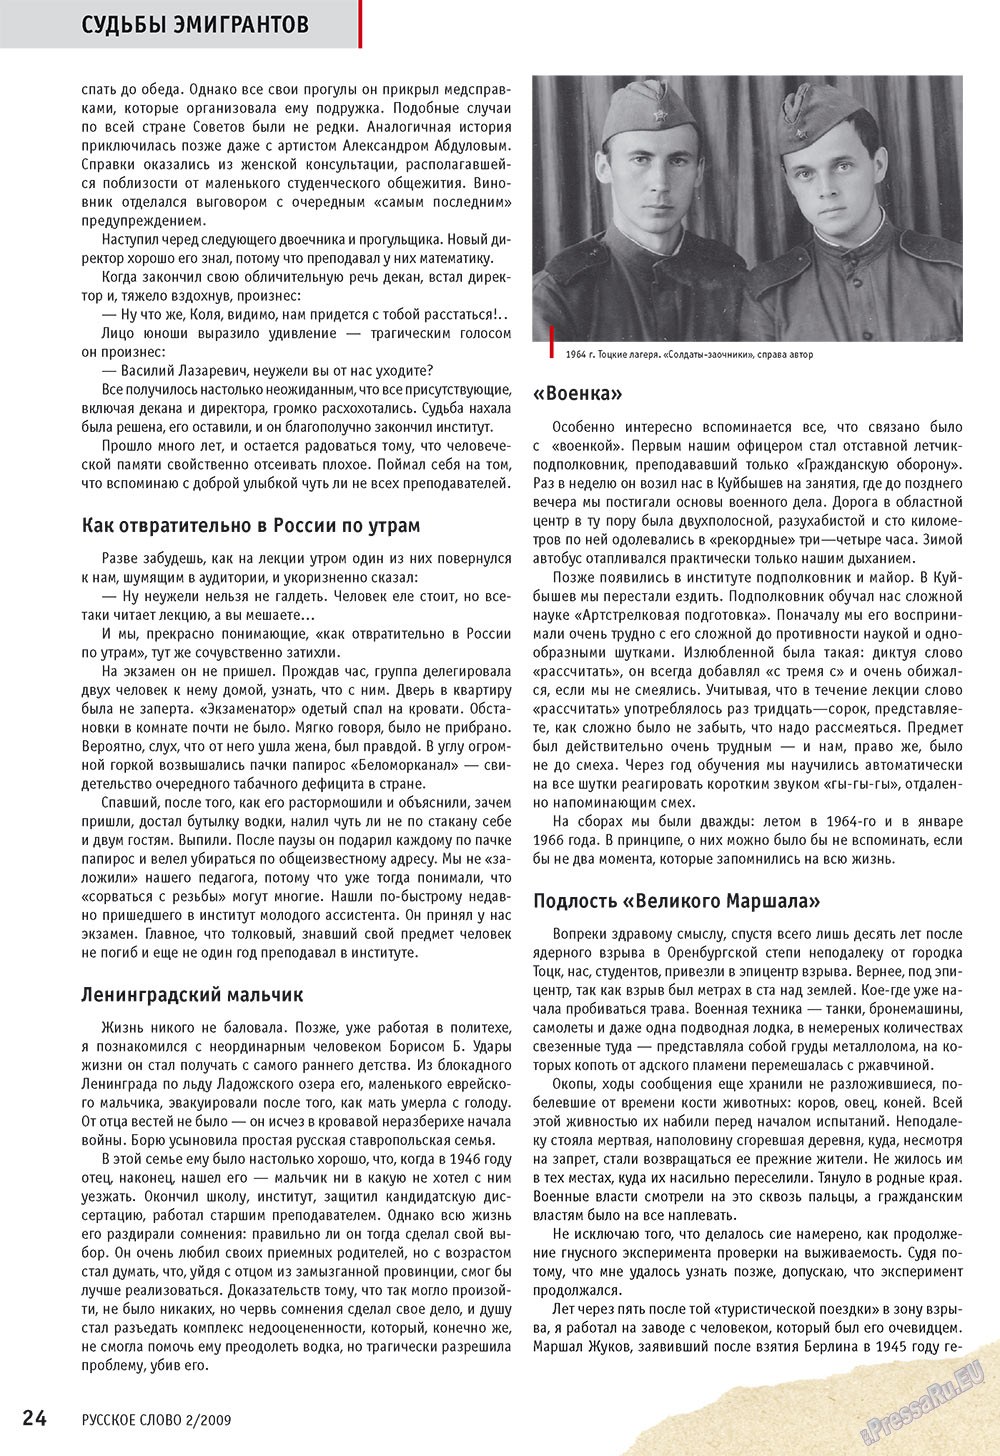 Русское слово, журнал. 2009 №2 стр.26